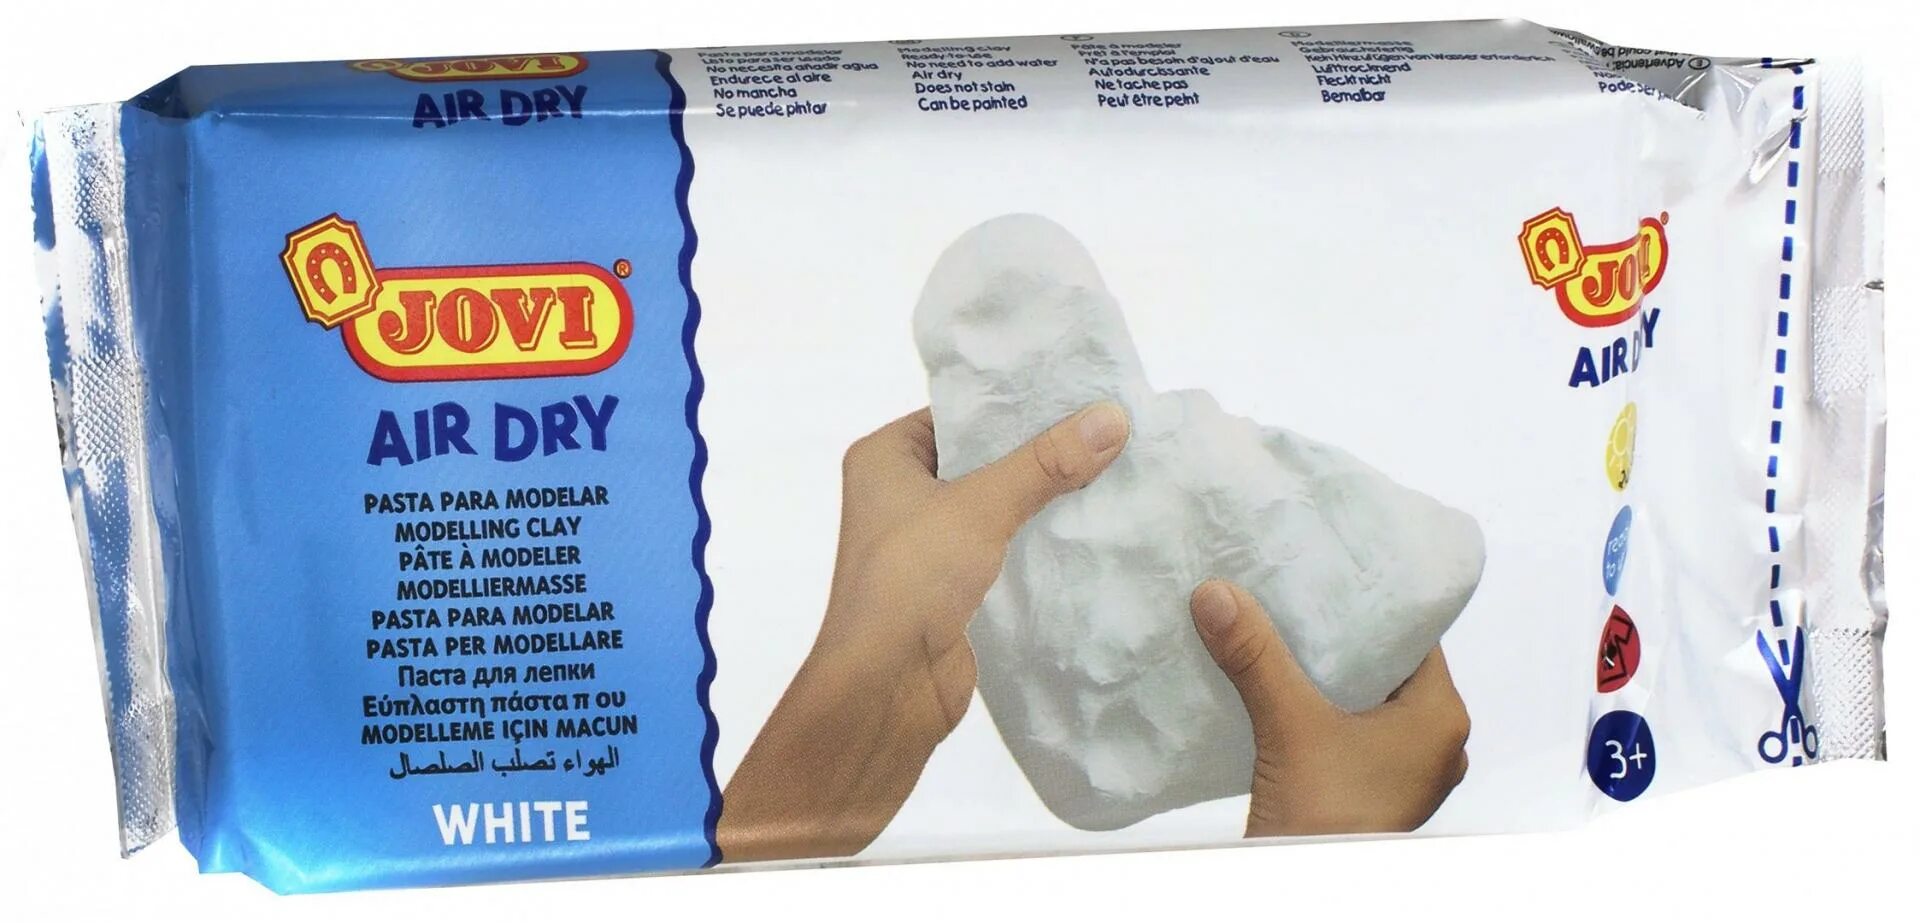 Паста для лепки. "Jovi" паста для моделирования 1000 г белая j86. Jovi Air Dry. Лепка из пасты для моделирования Jovi. Air Dry паста для лепки.